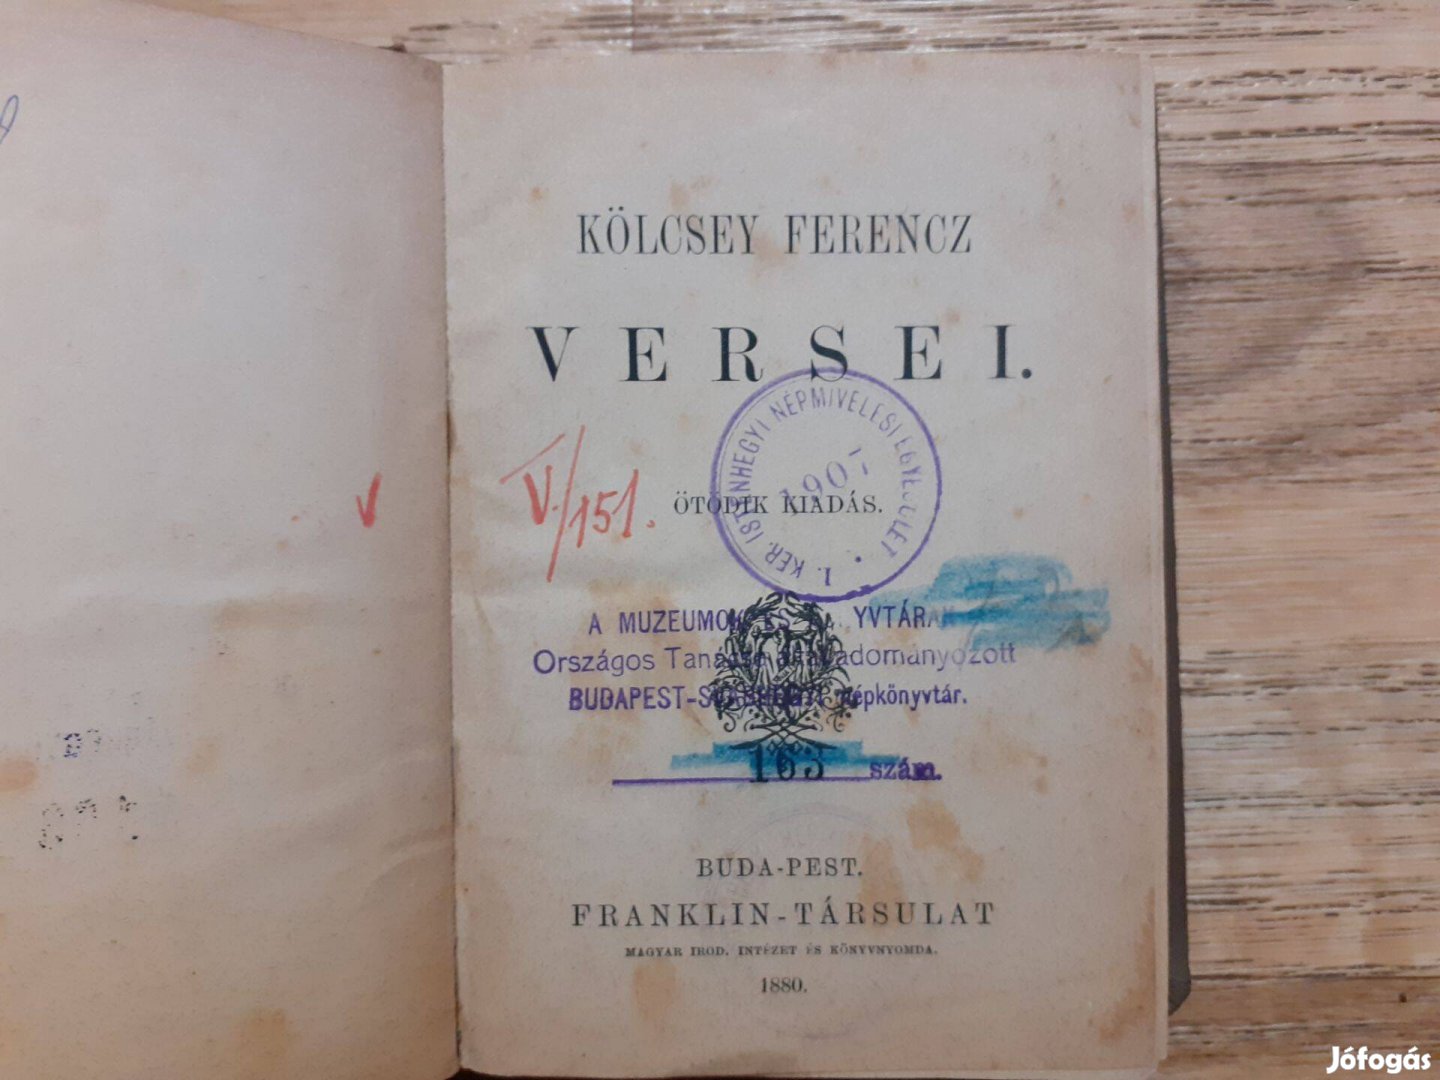 Kölcsey Ferencz versei (1880-as kiadás)